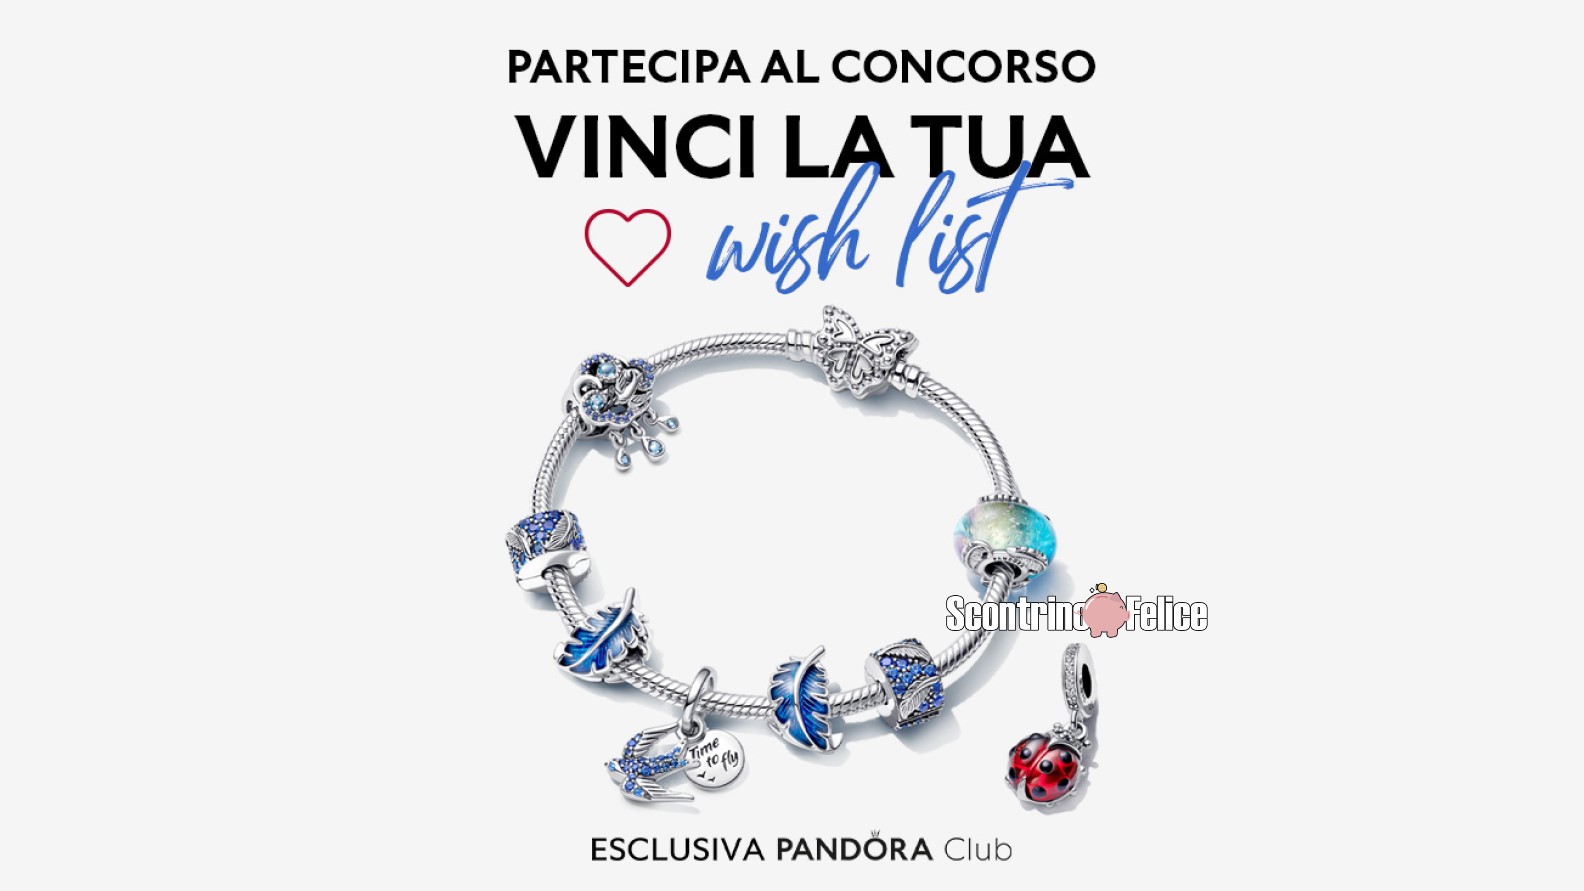 Concorso gratuito Pandora "Vinci la tua Wishlist": in palio 3 voucher da 300 euro